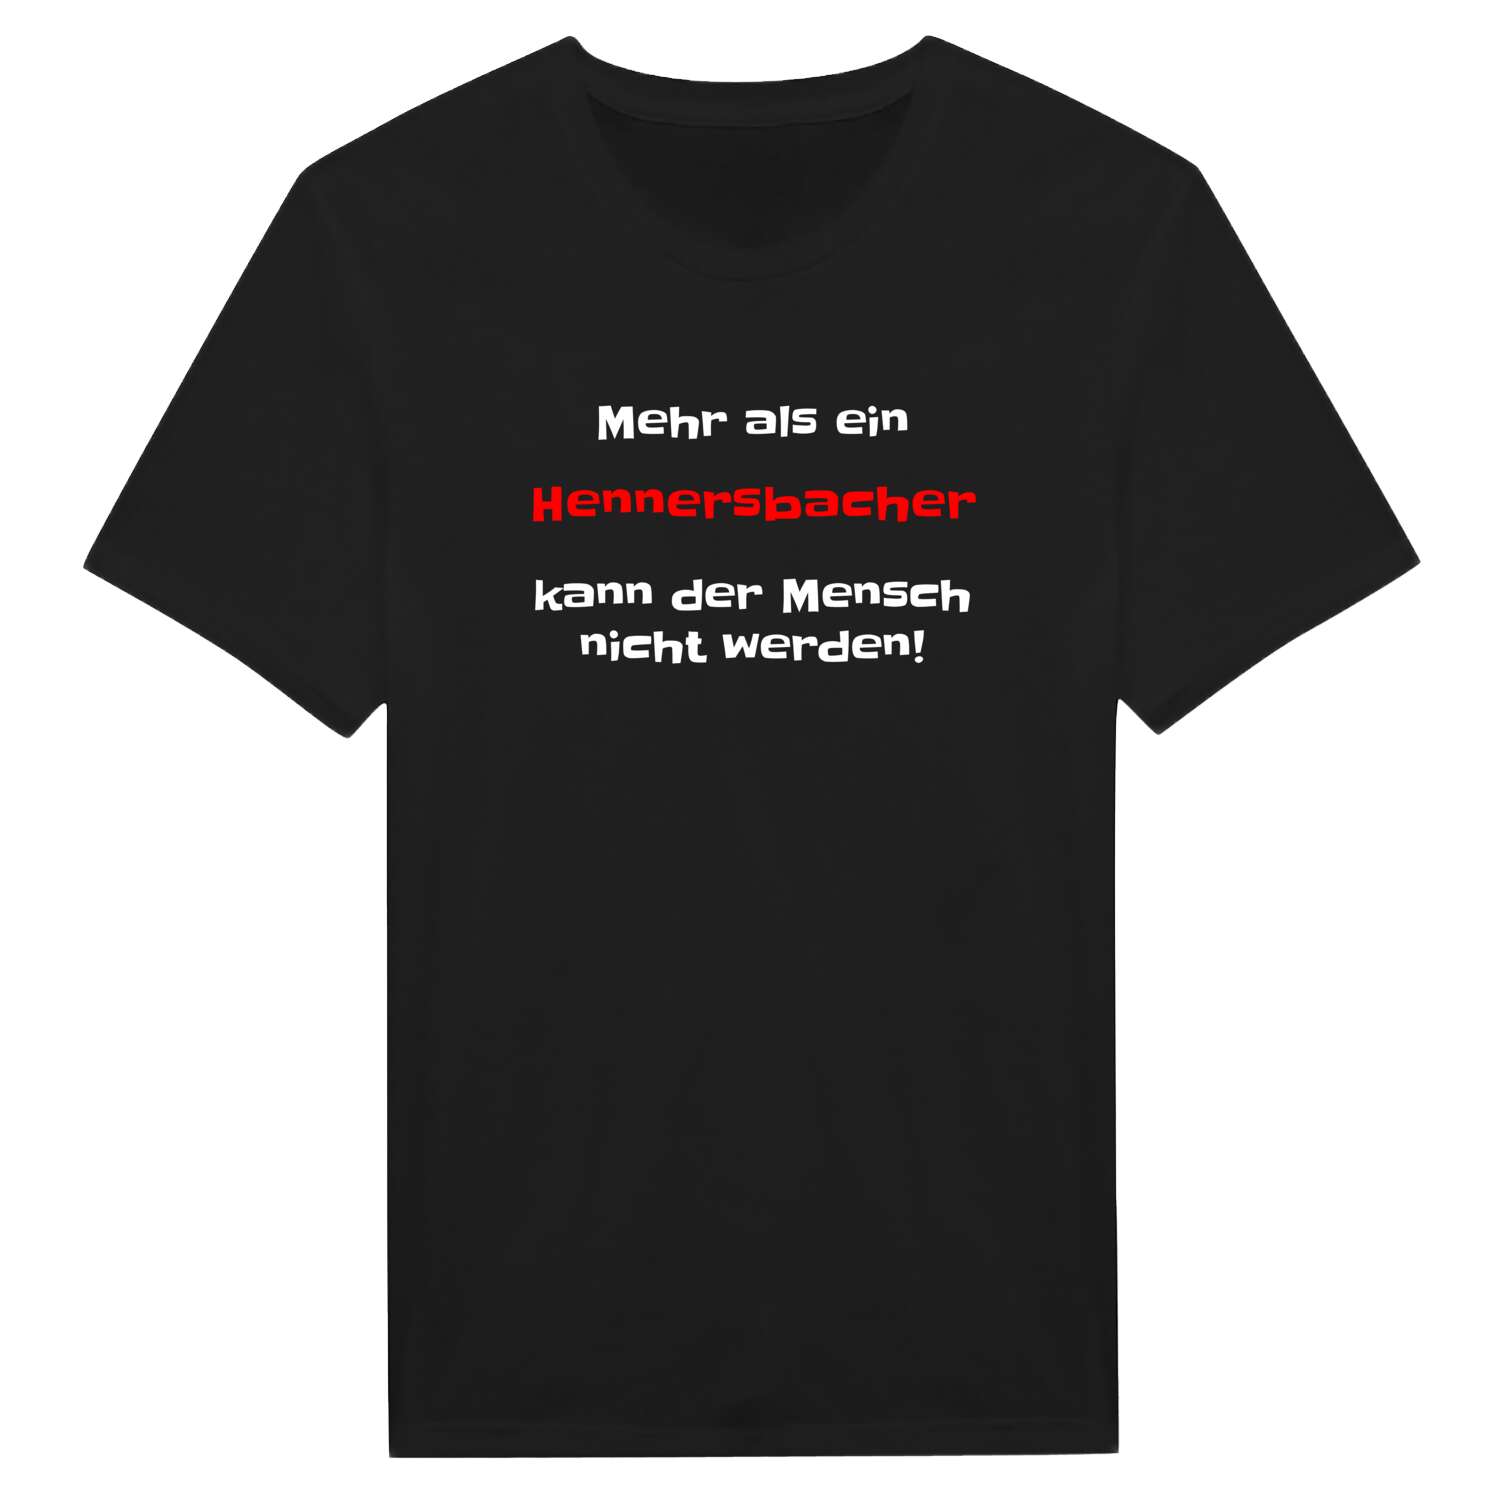 Hennersbach T-Shirt »Mehr als ein«